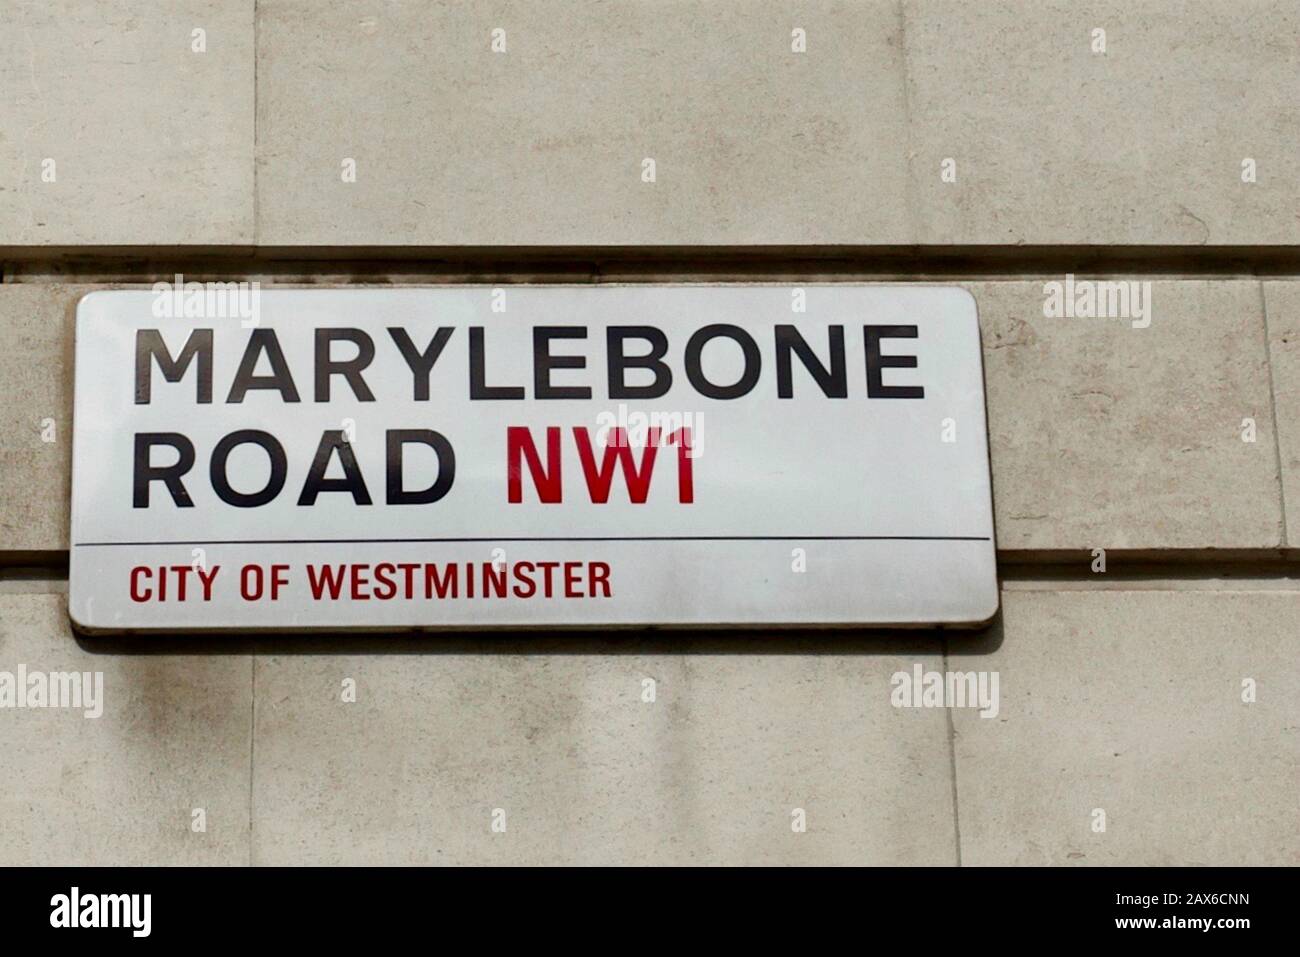 Marylebone Road, Marylebone, City of Westminster, London, England. Stock Photo